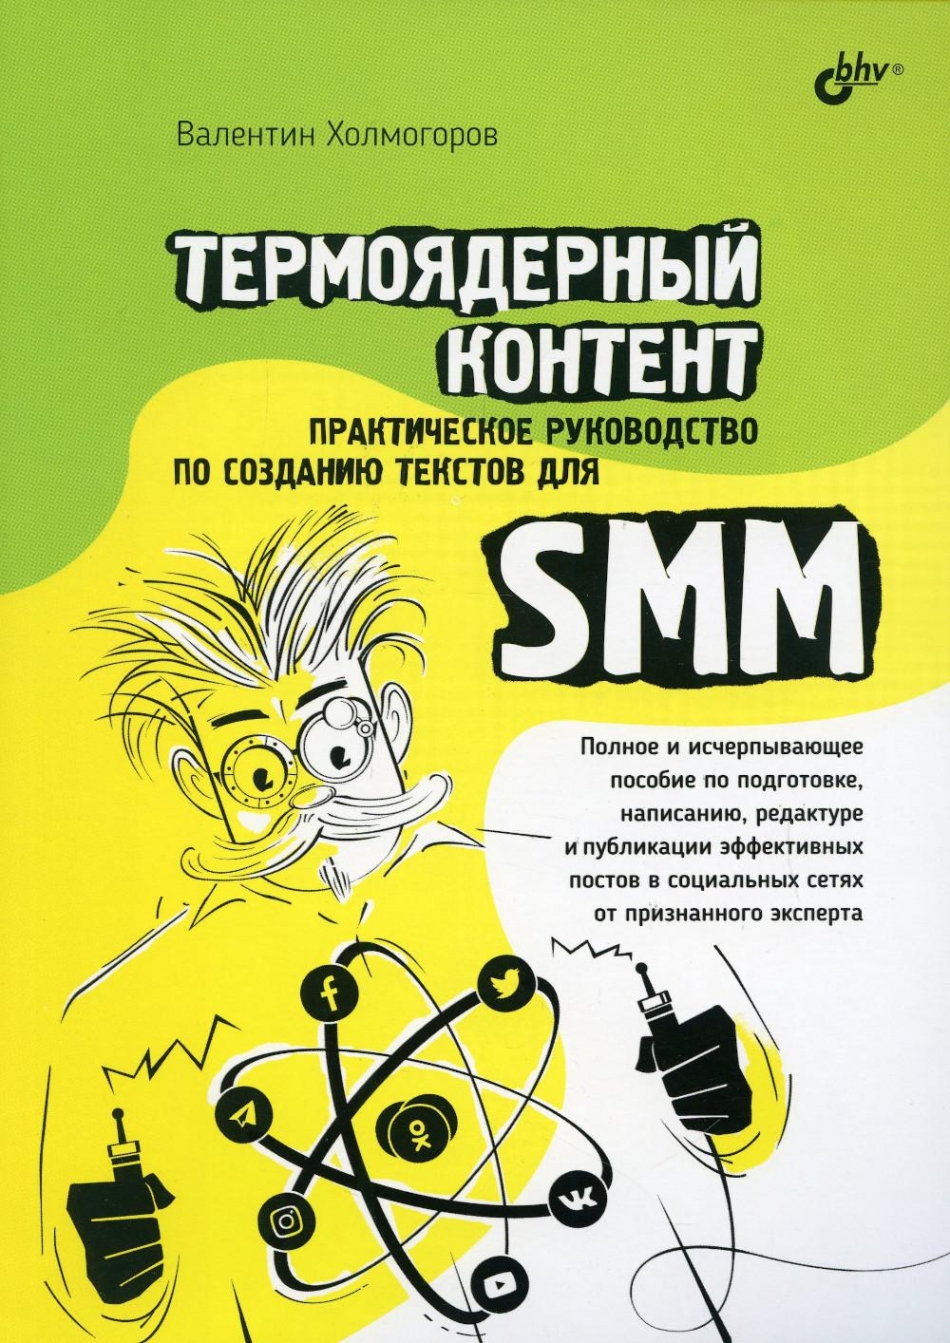 Холмогоров В.А. Термоядерный контент. Практическое руководство по созданию текстов для SMM 